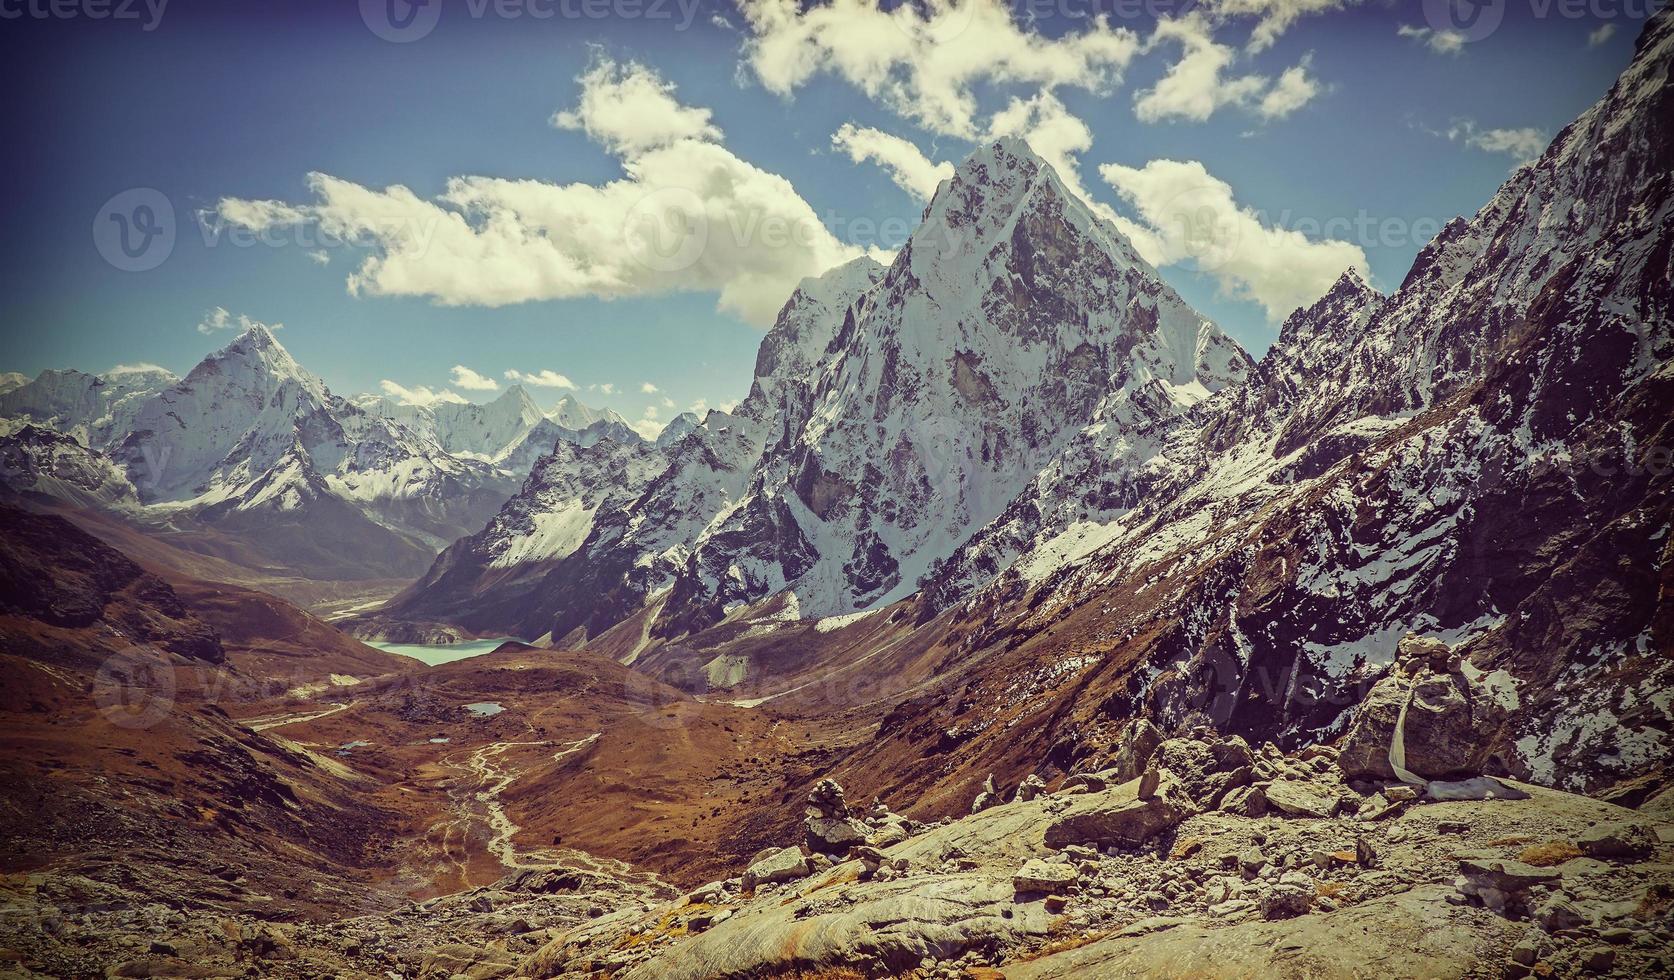 imagem retro vintage filtrada da paisagem das montanhas do Himalaia, foto